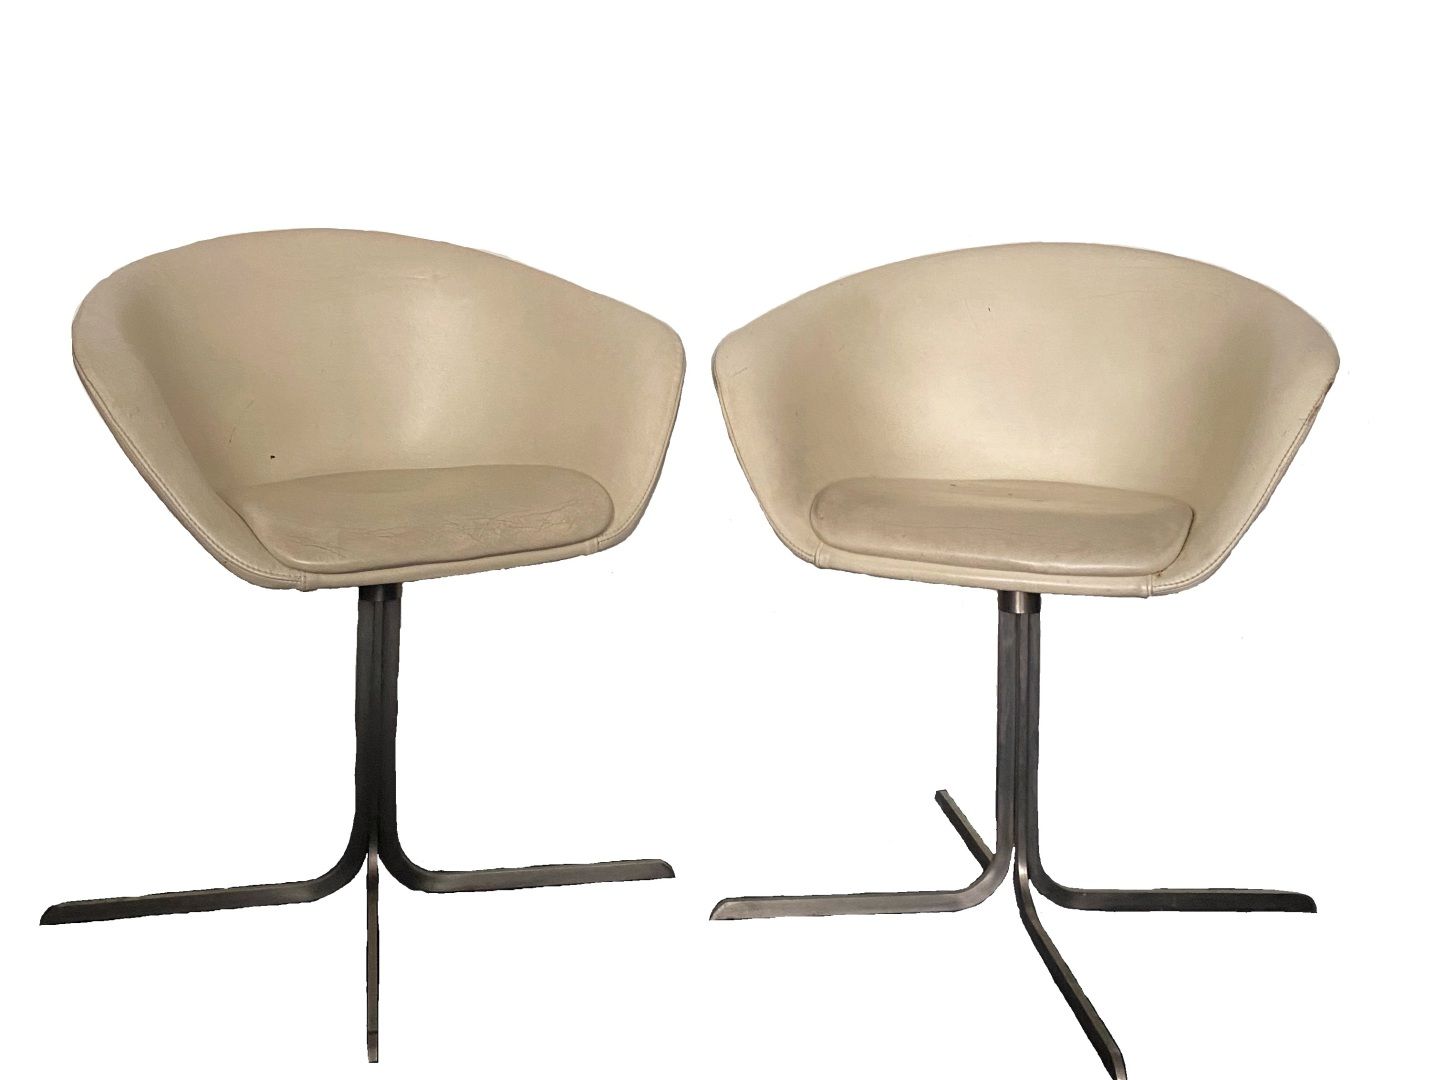 Null 
太空时代 




一对扶手椅，带旋转座椅，奶油色皮革软垫，镀铬金属的十字形底座 




约1970年




80 x 68 x 49厘米或31&hellip;